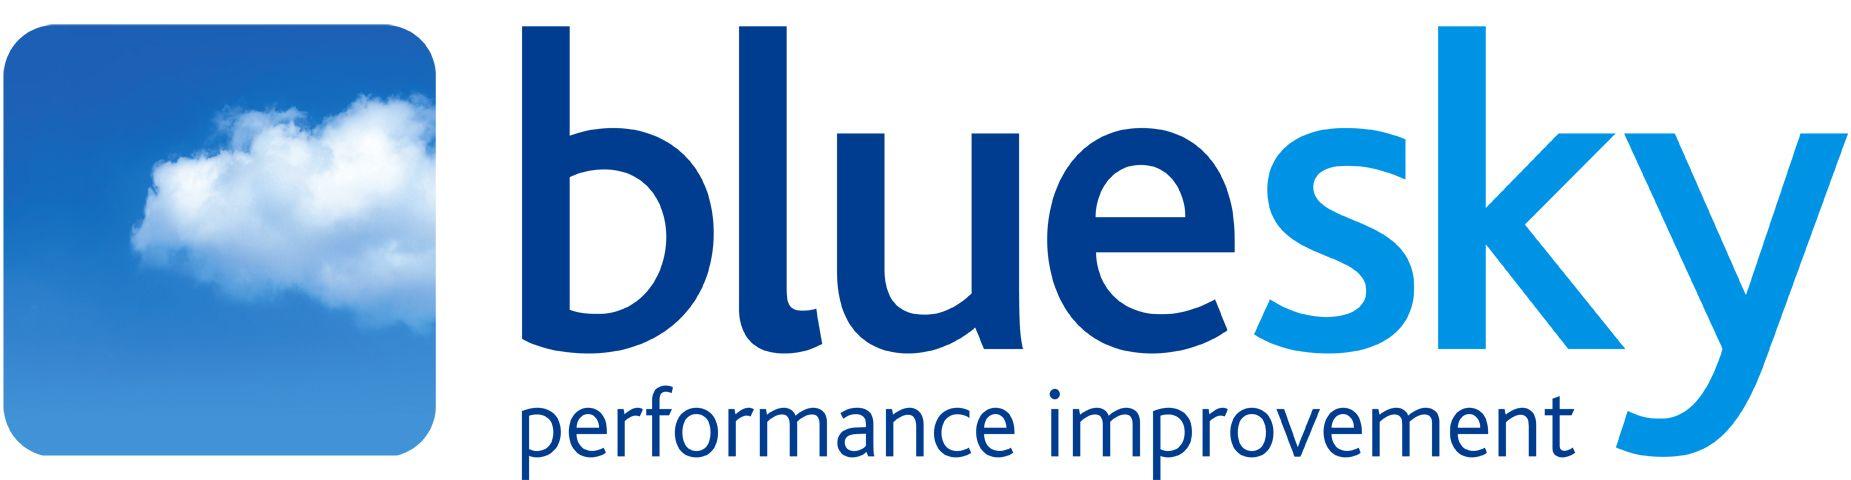 Blue Sky Logo - Blue sky Logos